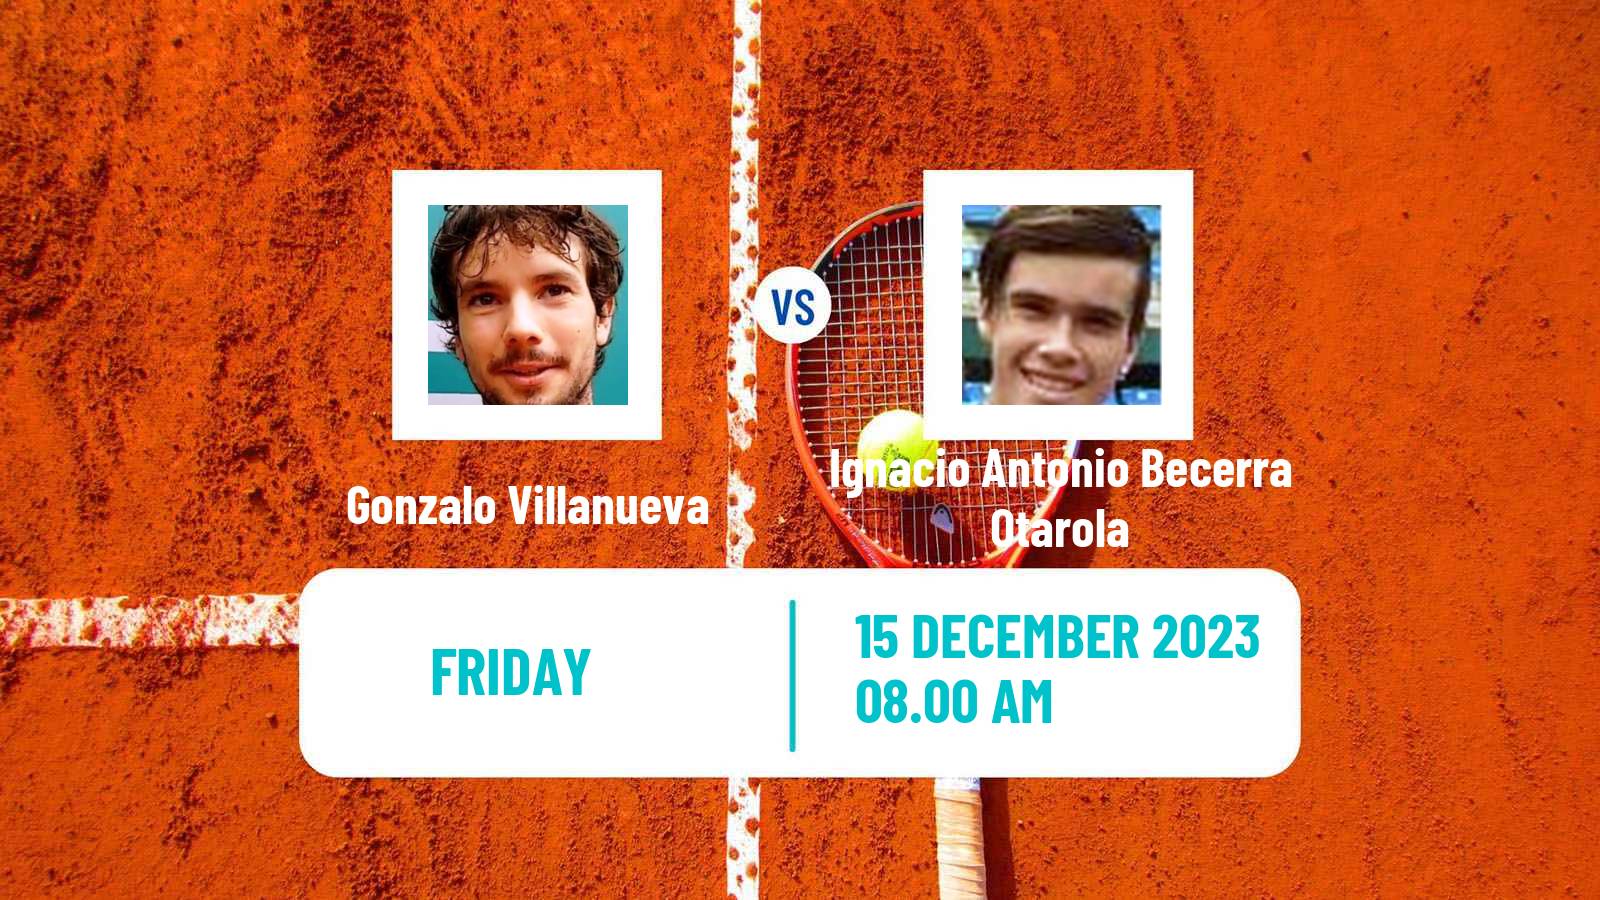 Tennis ITF M15 Concepcion 2 Men Gonzalo Villanueva - Ignacio Antonio Becerra Otarola